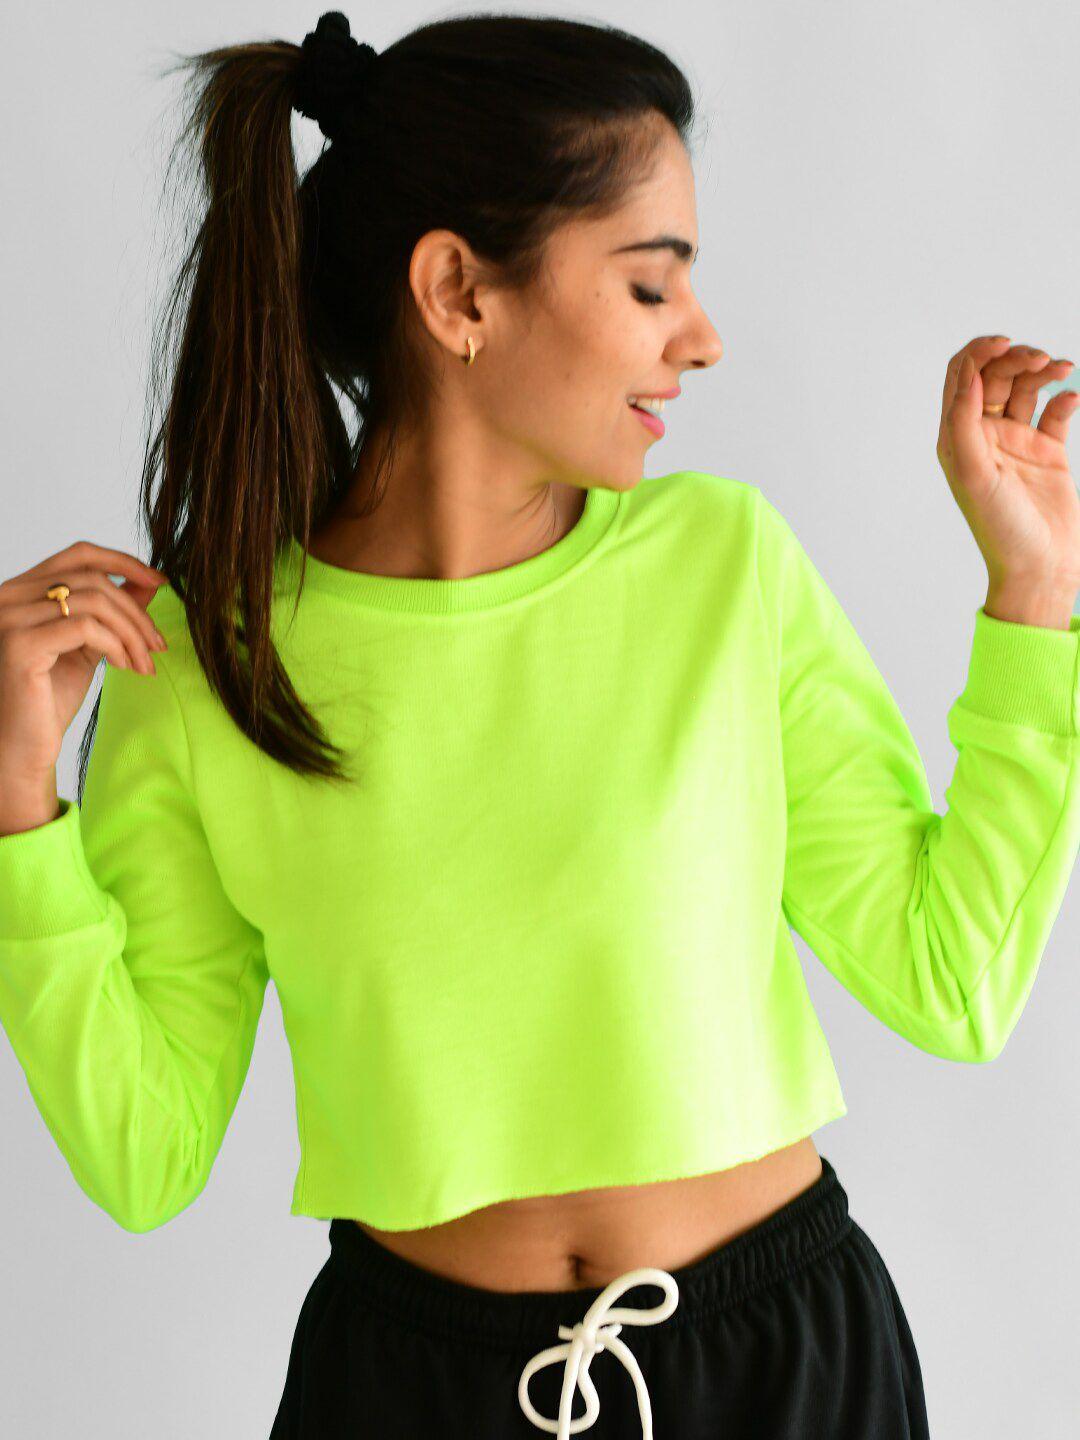 athlizur women fluorescent green cotton crop sweatshirt